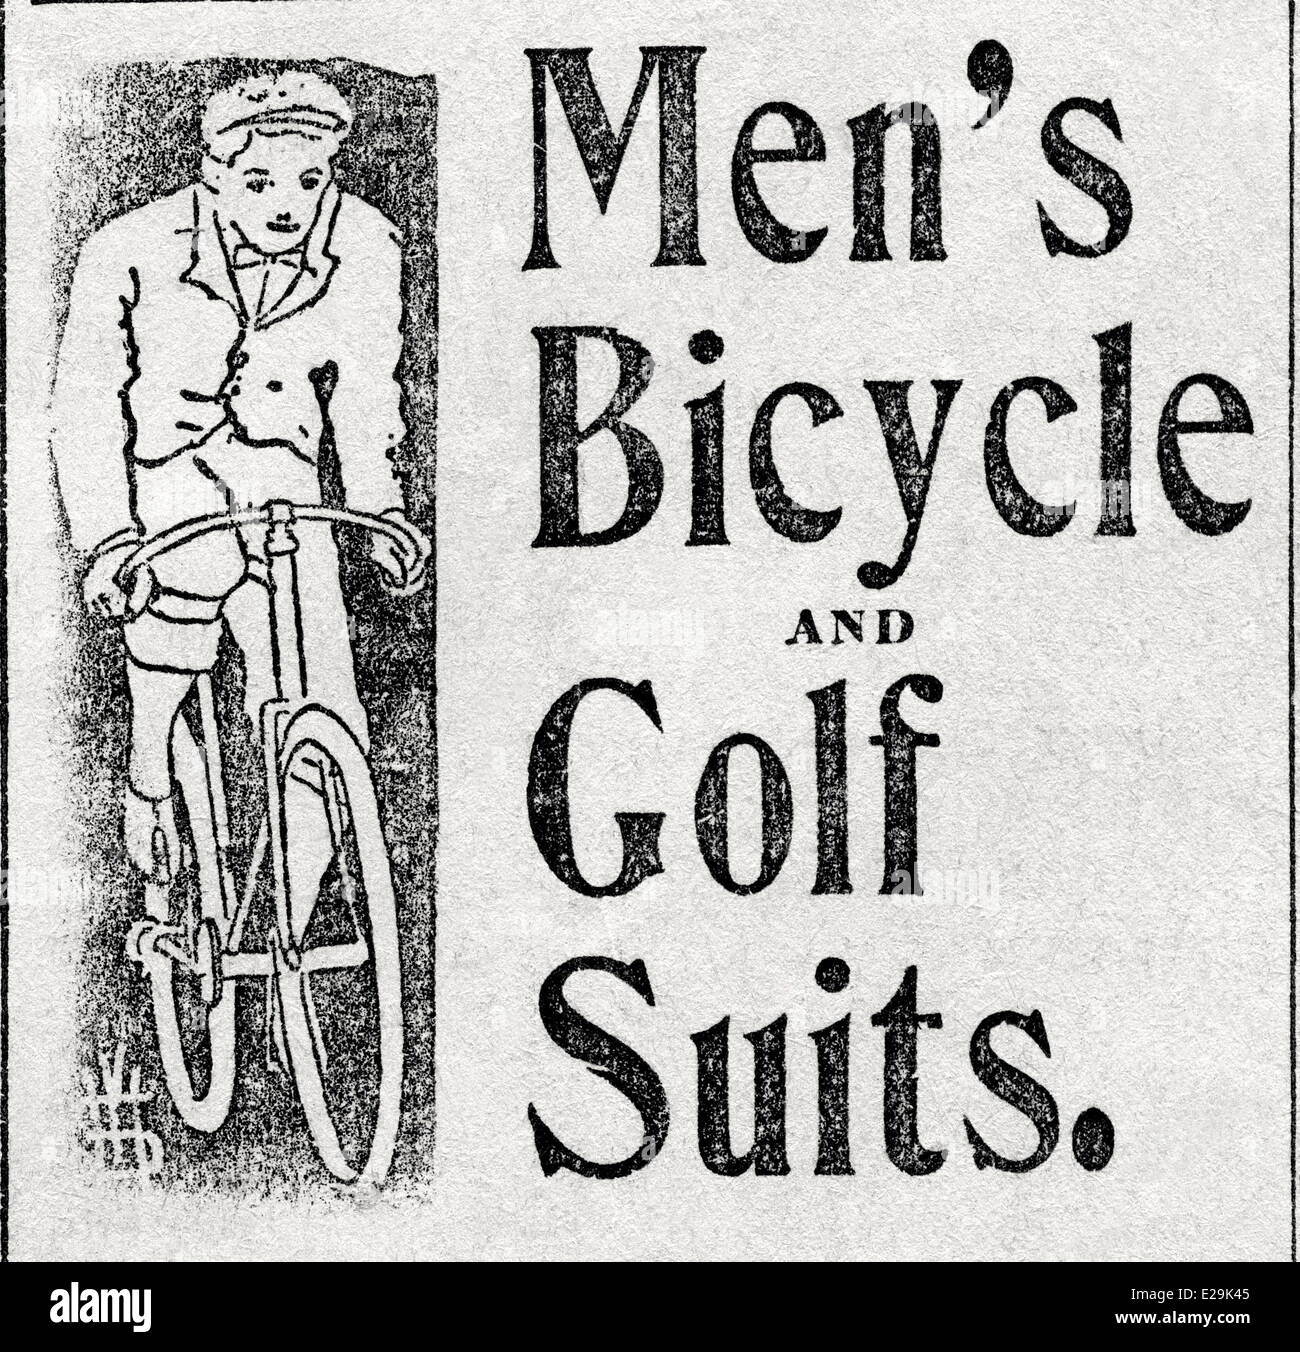 Worcester Evening Gazette, 15 juin 1898, Men's Location and Golf convient à la publicité Banque D'Images